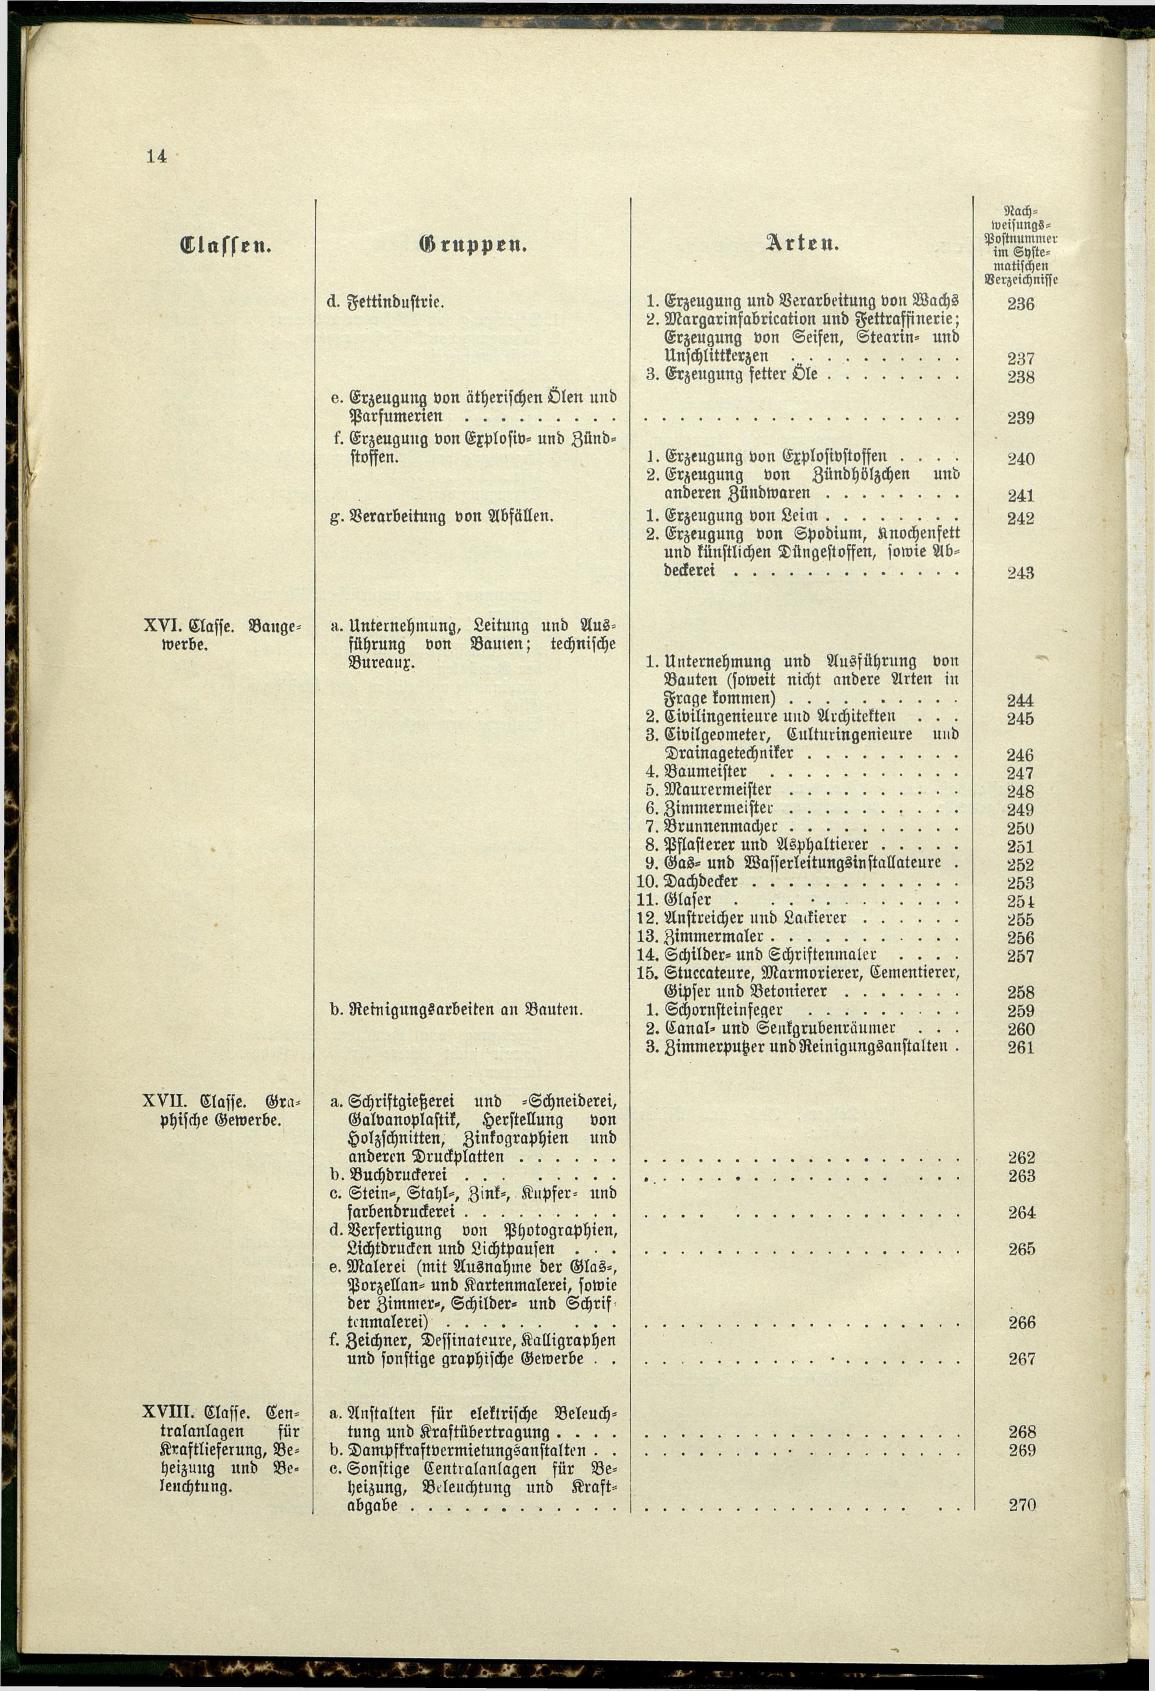 Verzeichnis der Gewerbe der im Reichsrathe vertretenen Königreiche und Länder 1900 - Page 18